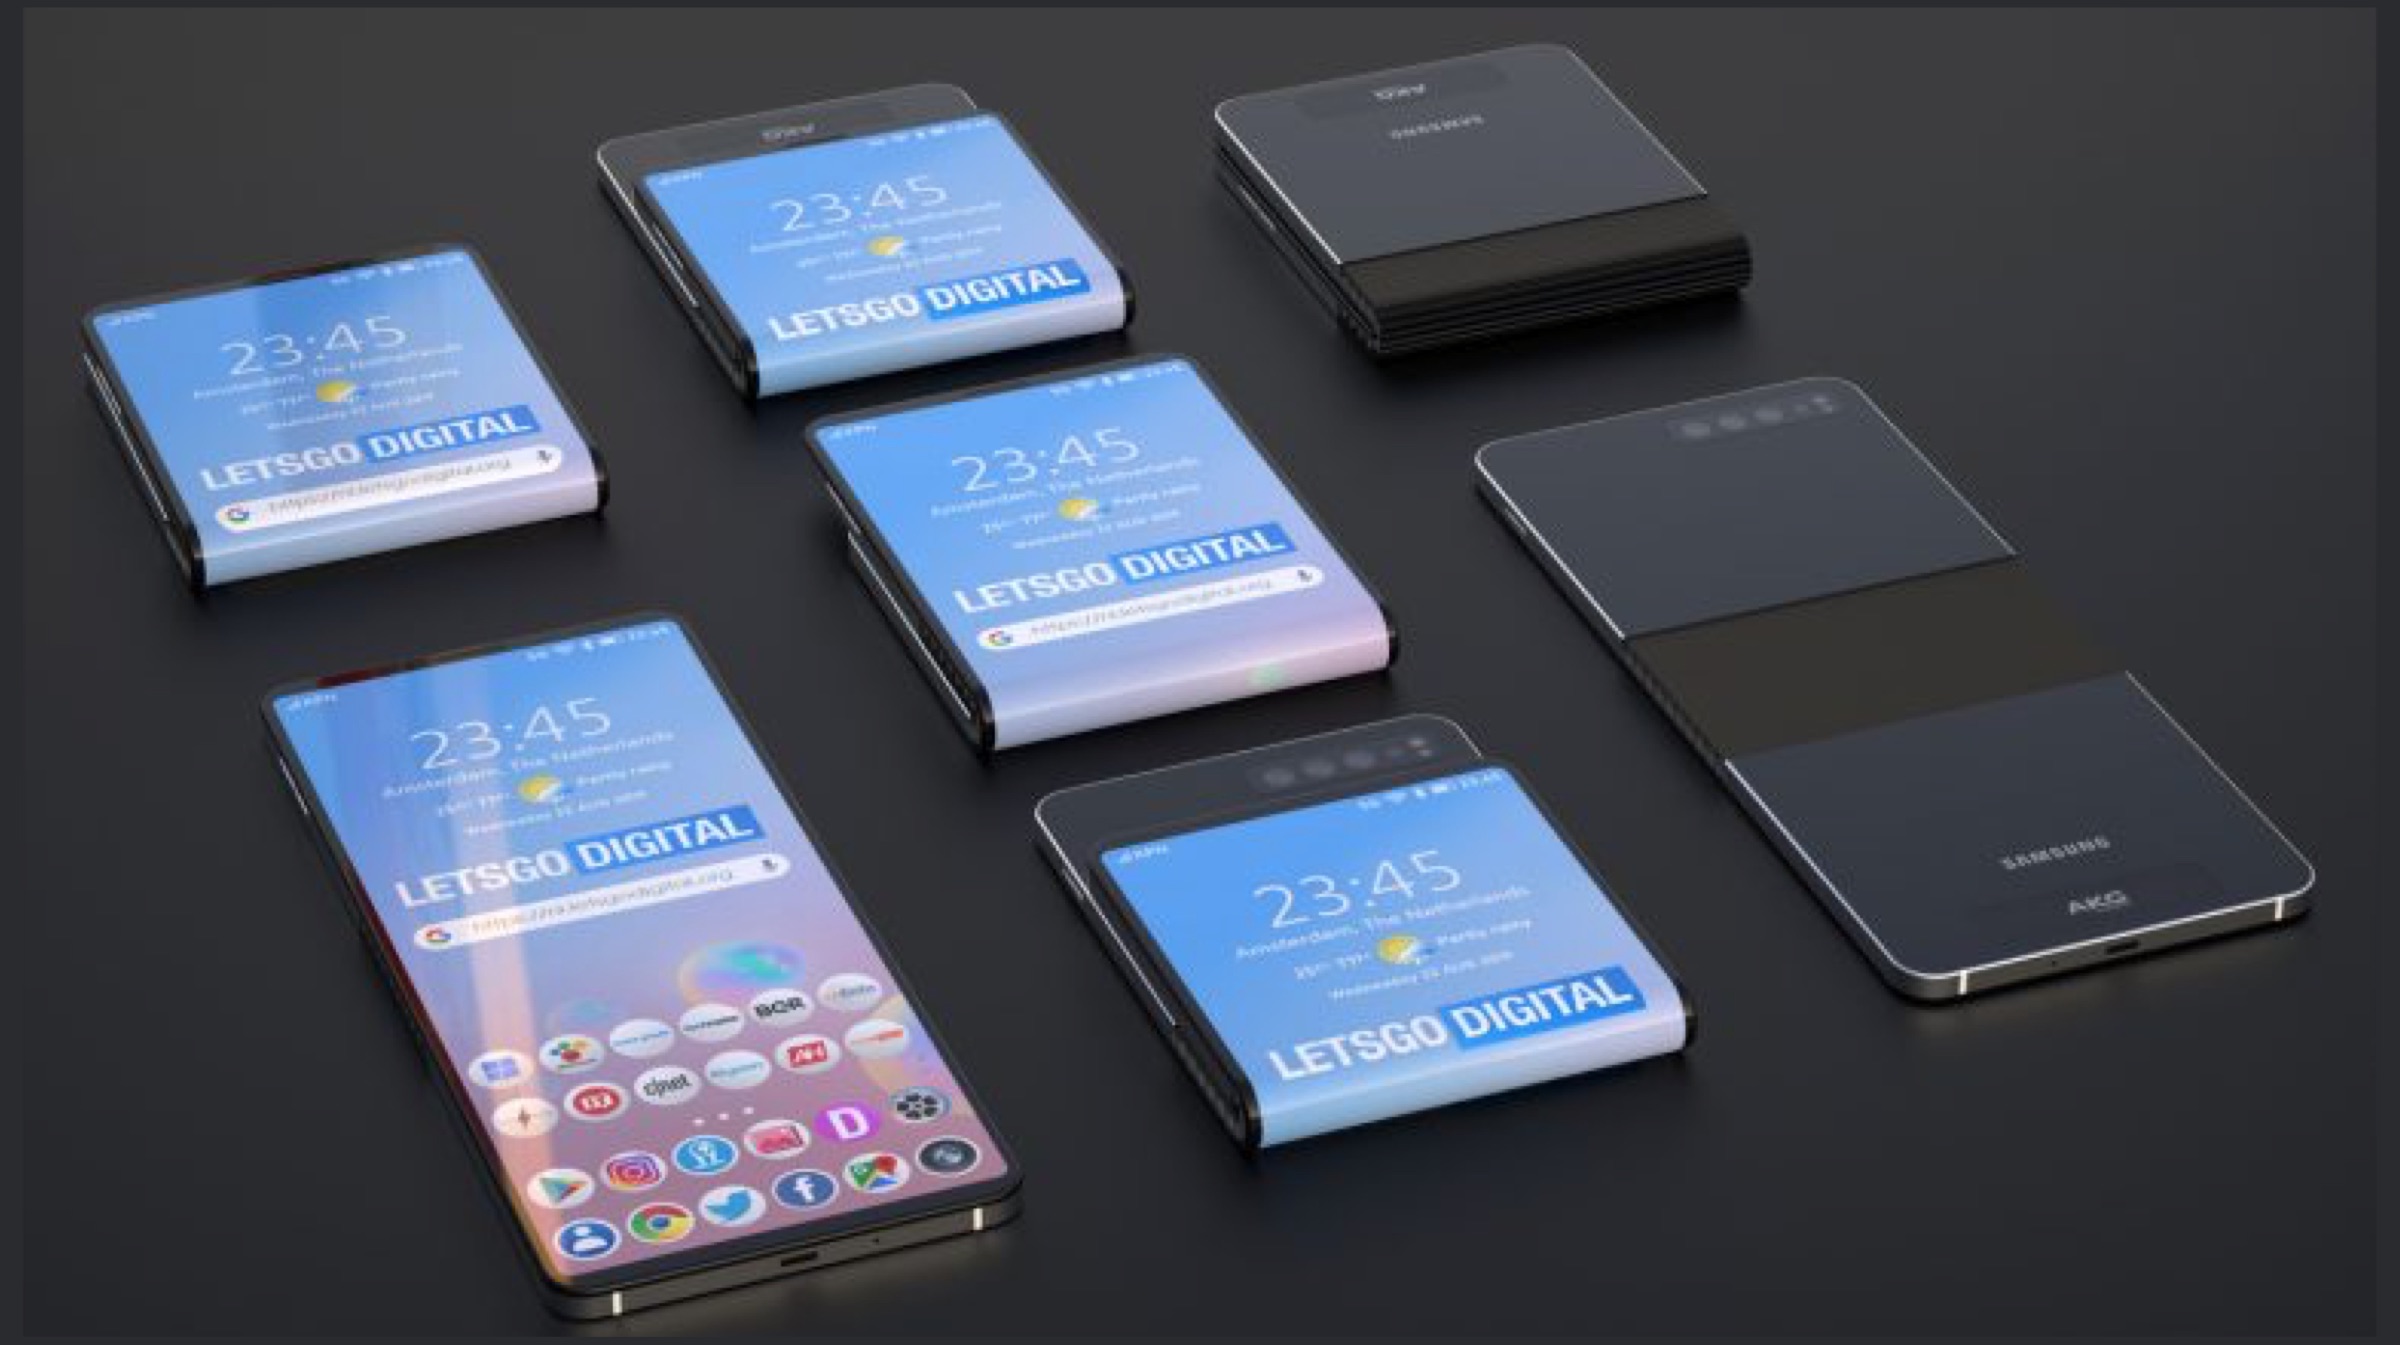 Samsung "width =" 2400 "height =" 1345 "srcset =" http://tehnografi.com/wp-content/uploads/2019/08/1566402852_990_Samsung-работает-над-смартфоном-который-может-Fold-В-обе-стороны.jpg 2400 Вт, https://www.igyaan.in/wp-content/uploads/2019/08/Samsung-Galaxy-Foldable-1--300x168.jpg 300 Вт, https://www.igyaan.in/wp-content/uploads/2019/08/Samsung-Galaxy-Foldable-1--320x179.jpg 320 Вт, https://www.igyaan.in/wp-content/uploads/2019/08/Samsung-Galaxy-Foldable-1--768x430.jpg 768 Вт, https://www.igyaan.in/wp-content/uploads/2019/08/Samsung-Galaxy-Foldable-1--1100x616.jpg 1100 Вт, https://www.igyaan.in/wp-content/uploads/2019/08/Samsung-Galaxy-Foldable-1--600x336.jpg 600 Вт, https://www.igyaan.in/wp-content/uploads/2019/08/Samsung-Galaxy-Foldable-1--200x112.jpg 200 Вт, https://www.igyaan.in/wp-content/uploads/2019/08/Samsung-Galaxy-Foldable-1--20x11.jpg 20 Вт, https://www.igyaan.in/wp-content/uploads/2019/08/Samsung-Galaxy-Foldable-1--40x22.jpg 40 Вт, https://www.igyaan.in/wp-content/uploads/2019/08/Samsung-Galaxy-Foldable-1--80x45.jpg 80 Вт, https://www.igyaan.in/wp-content/uploads/2019/08/Samsung-Galaxy-Foldable-1--1000x560.jpg 1000 Вт, https://www.igyaan.in/wp-content/uploads/2019/08/Samsung-Galaxy-Foldable-1--1200x673.jpg 1200w "размеры =" (максимальная ширина: 2400 пикселей) 100 Вт, 2400 пикселей "/></p>
<p><strong>Также прочитайте:</strong> <span style=